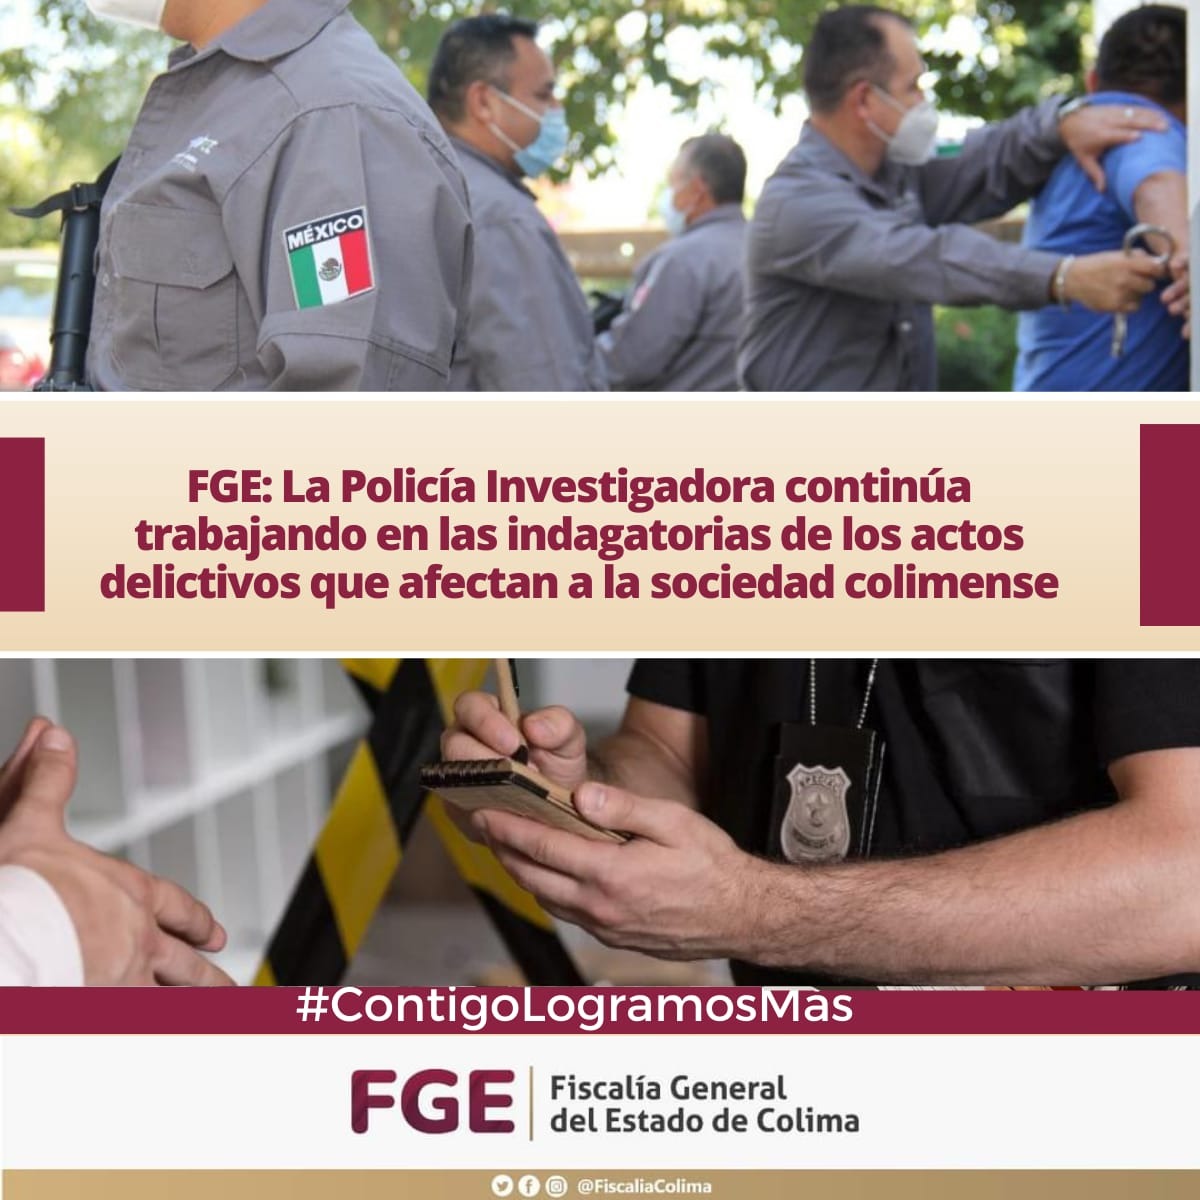 FGE: La Policía Investigadora continúa trabajando en las indagatorias de los actos delictivos que afectan a la sociedad colimense